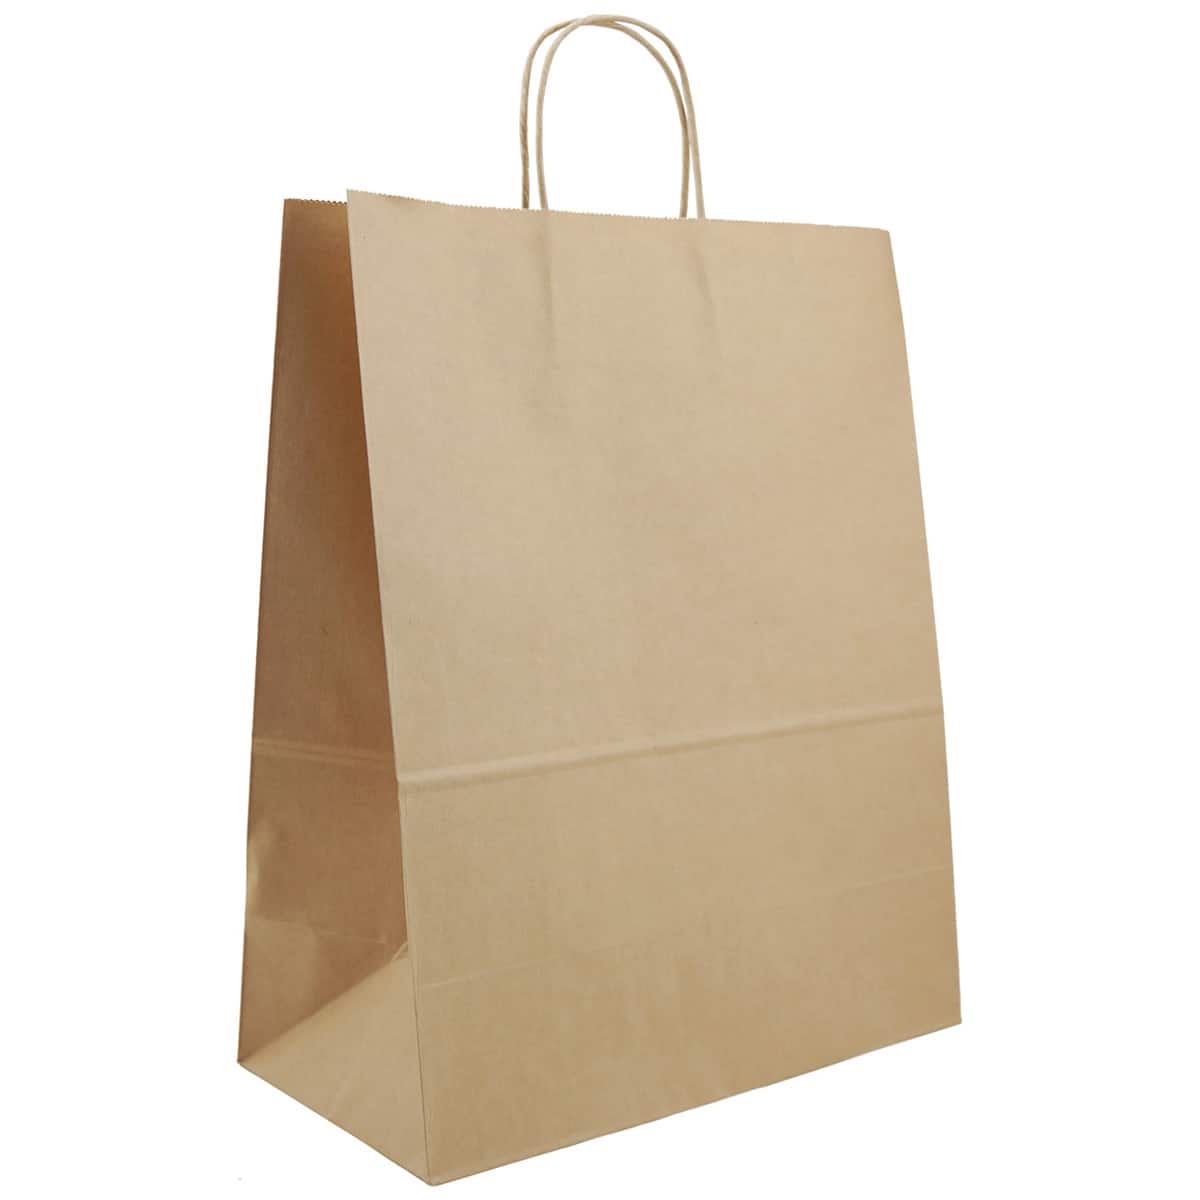 Kraft Bags, Kraft Paper Bags, Brown Bags in Stock - ULINE